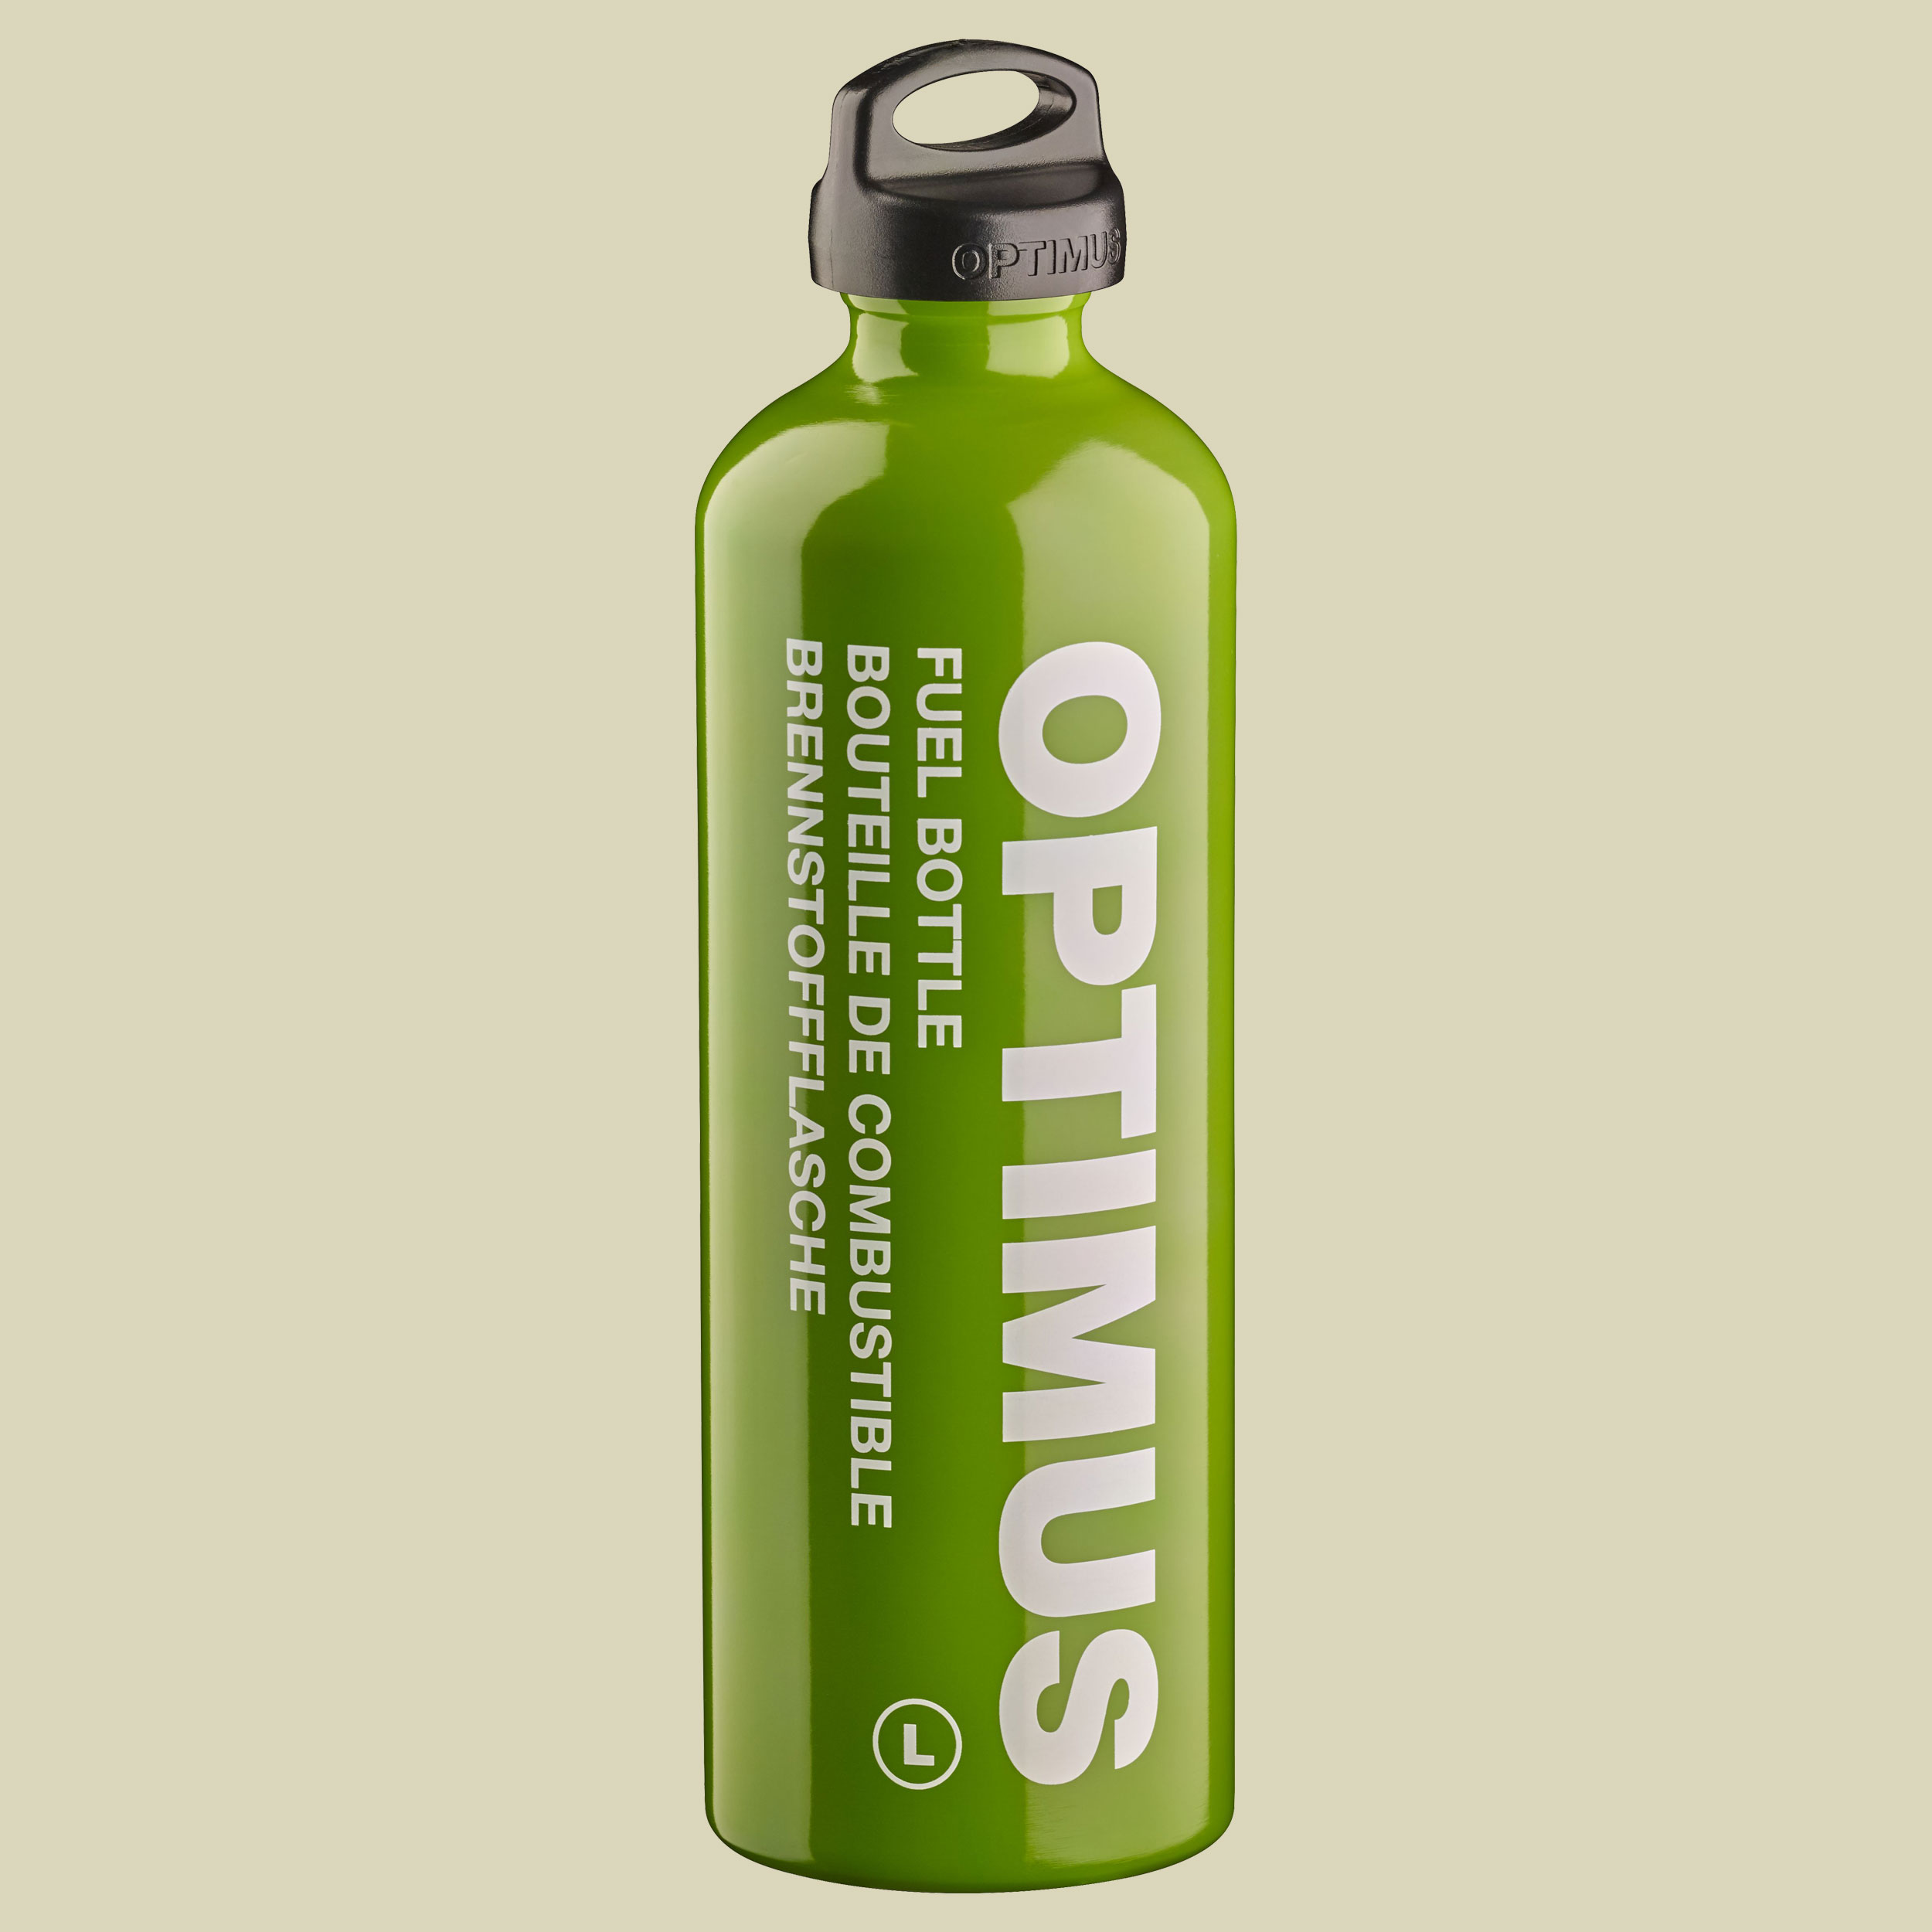 Brennstoffflasche L 1 L Volumen: 1000  ml Farbe: grün